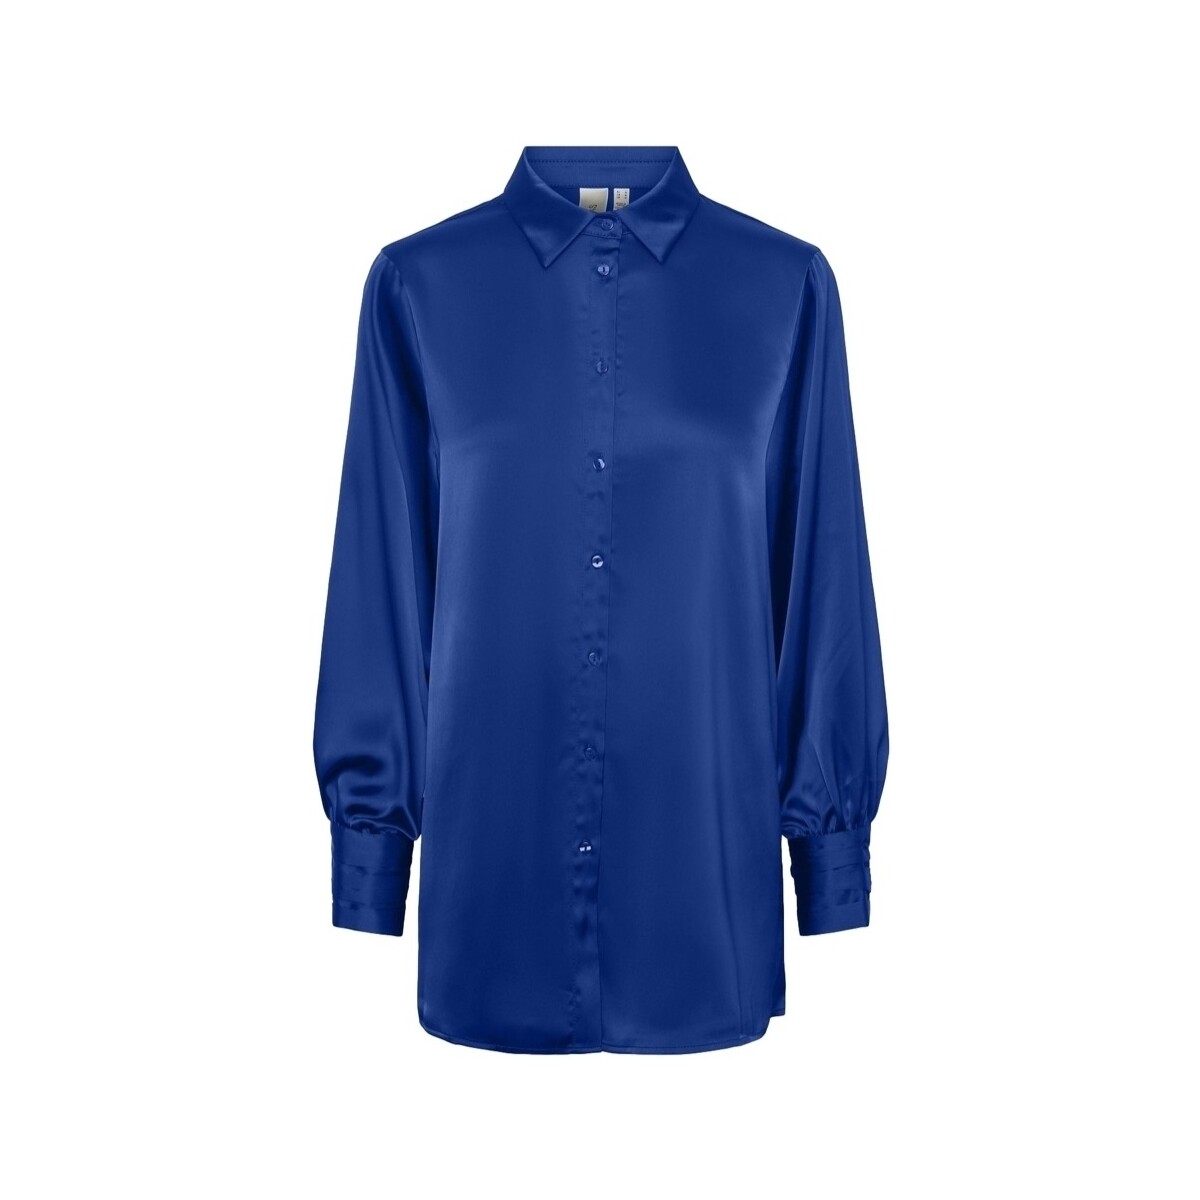 Textiel Dames Tops / Blousjes Y.a.s YAS Noos Pella Shirt L/S - Surf The Web Blauw